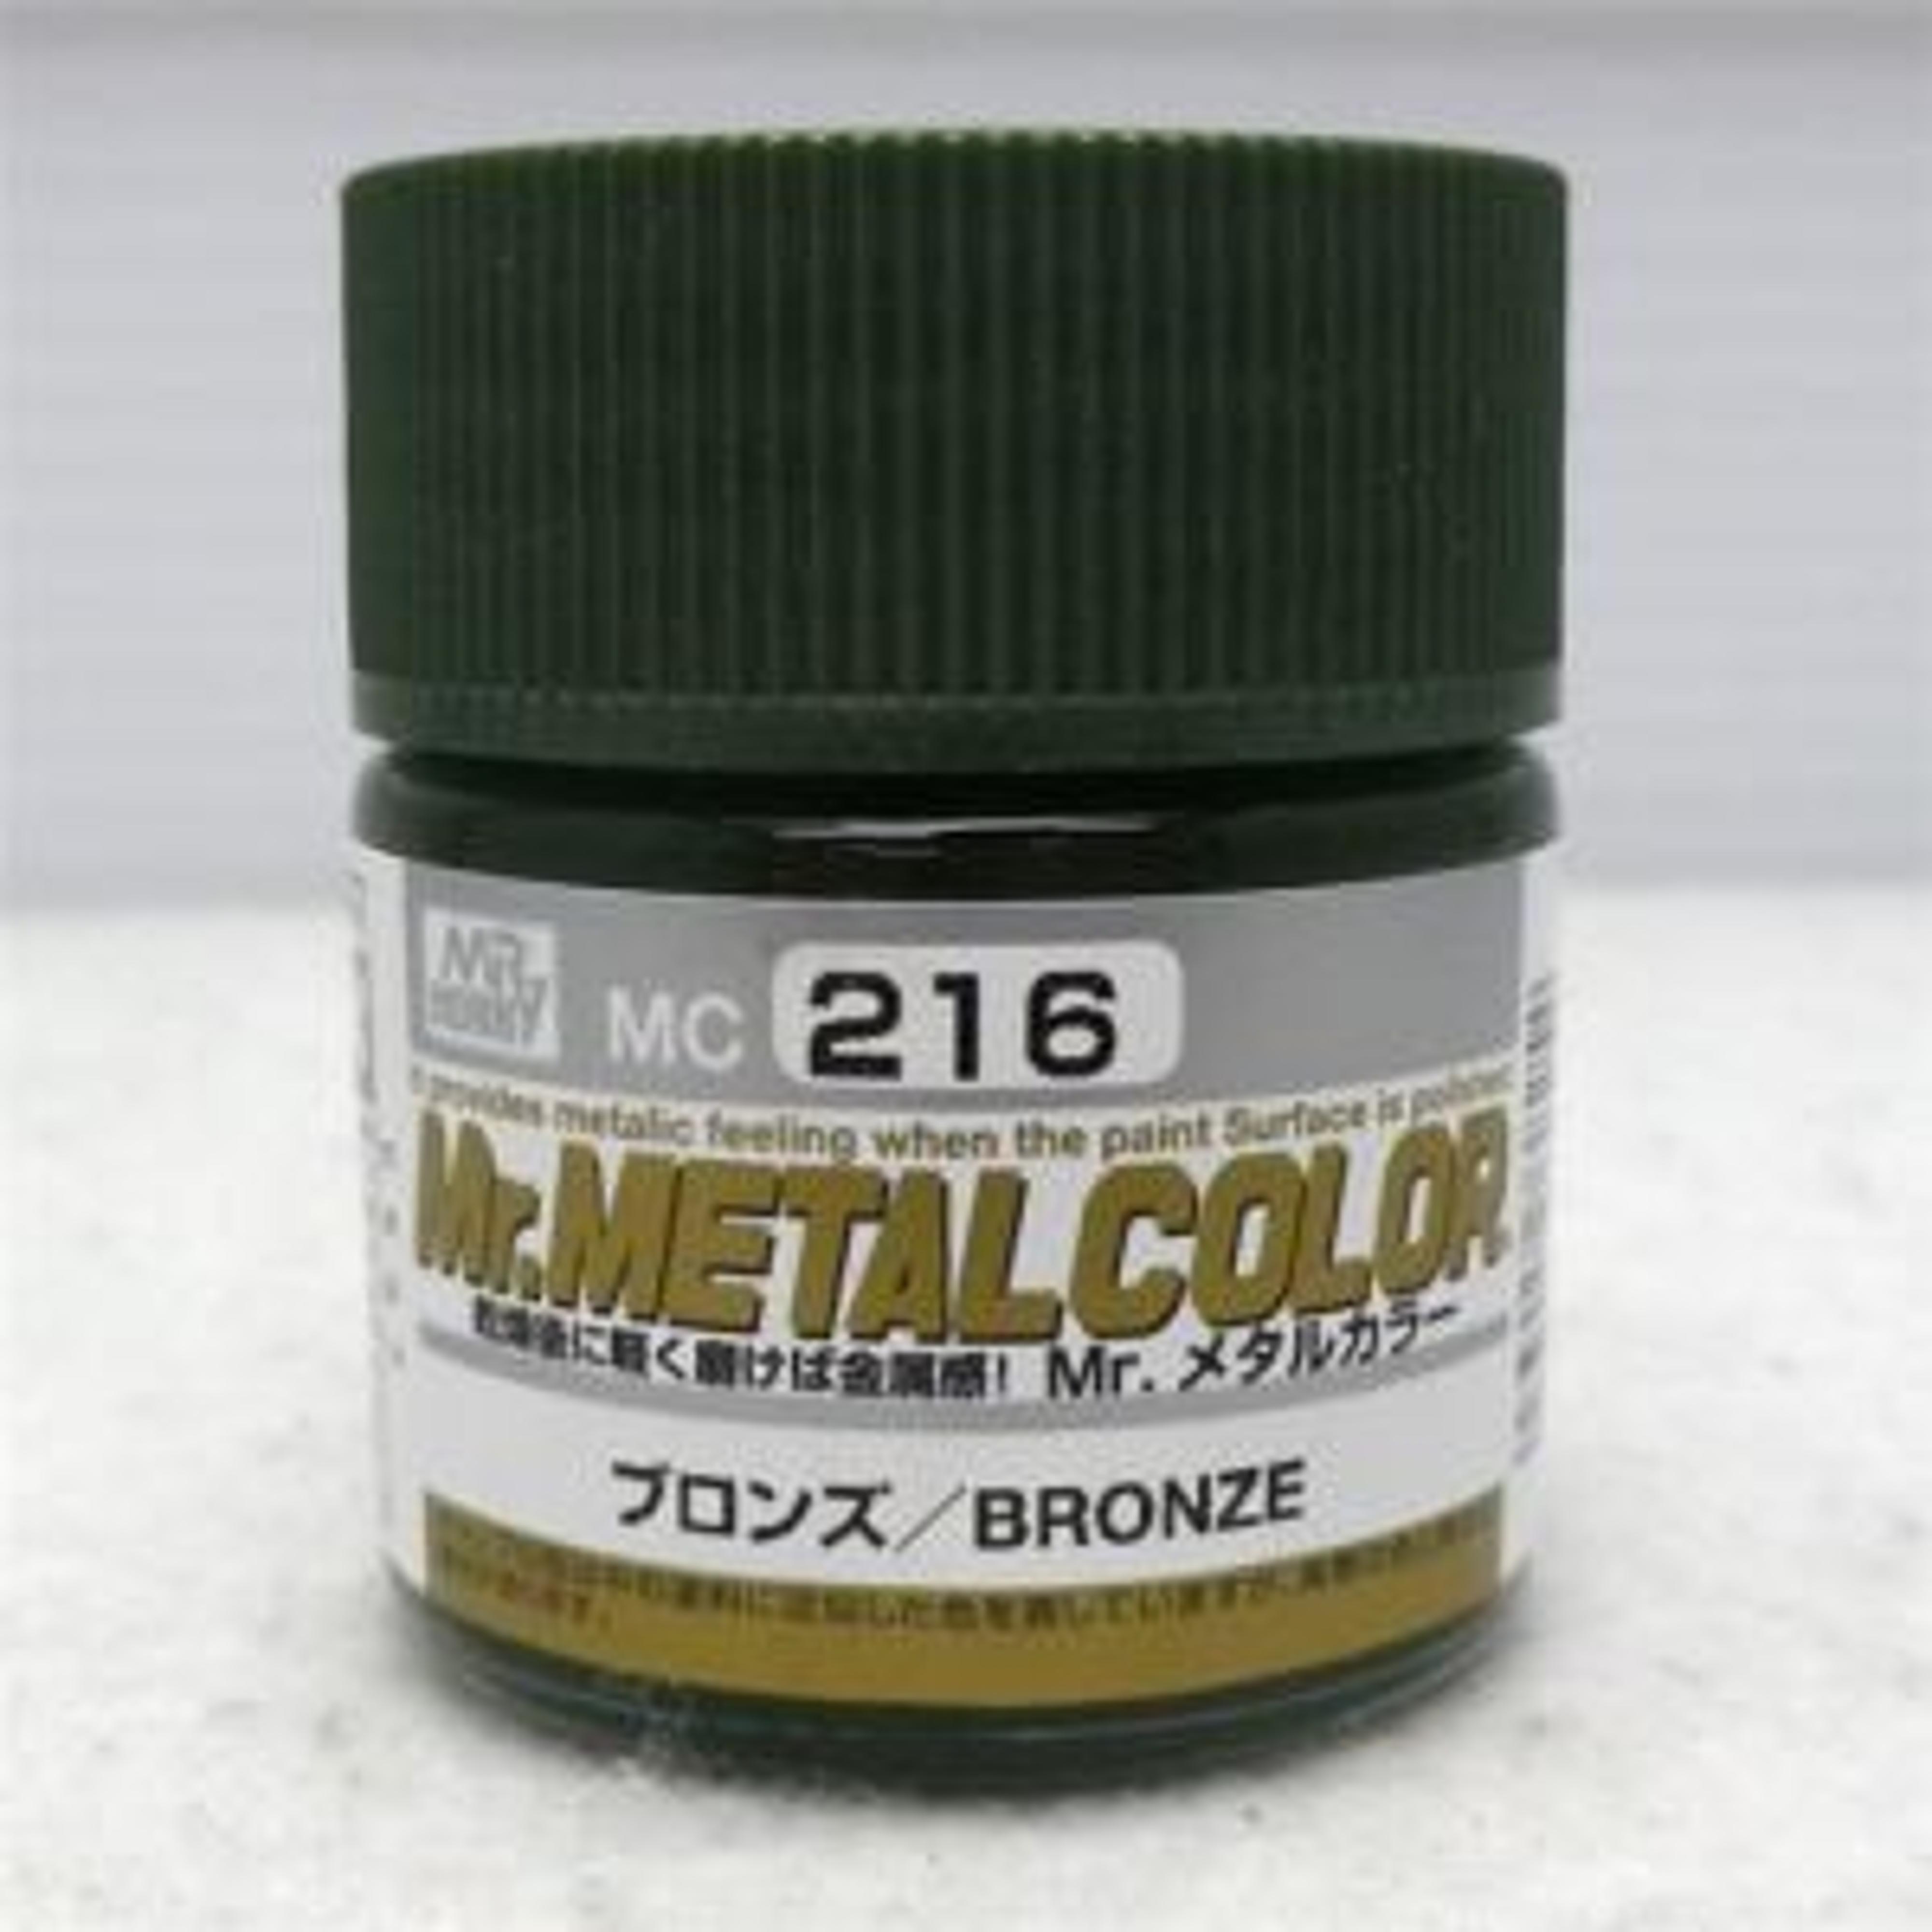 Mr. Metal Color Bronze